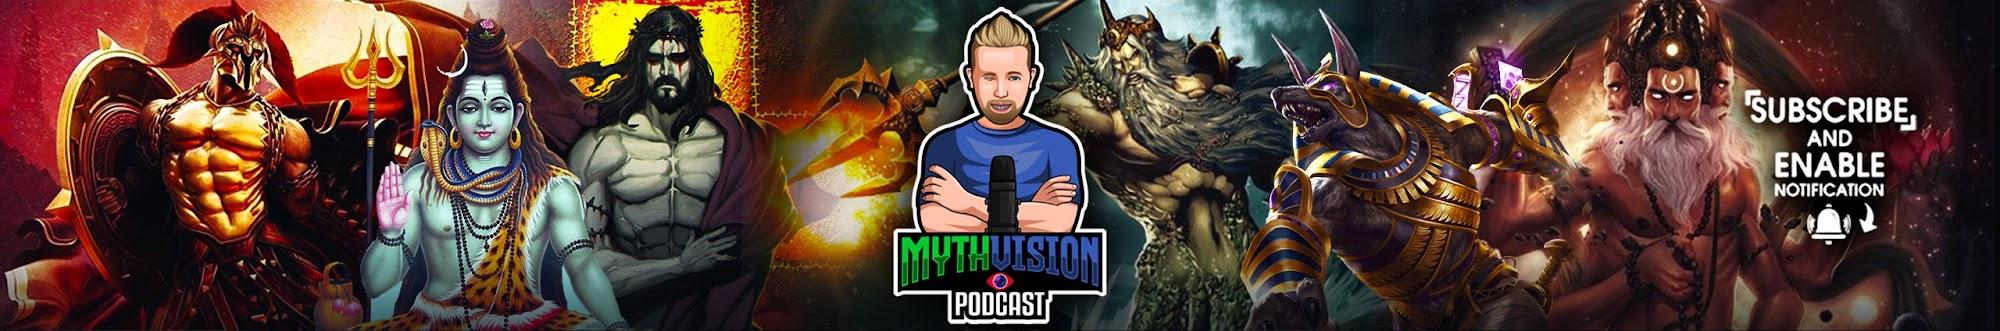 MythVision Podcast